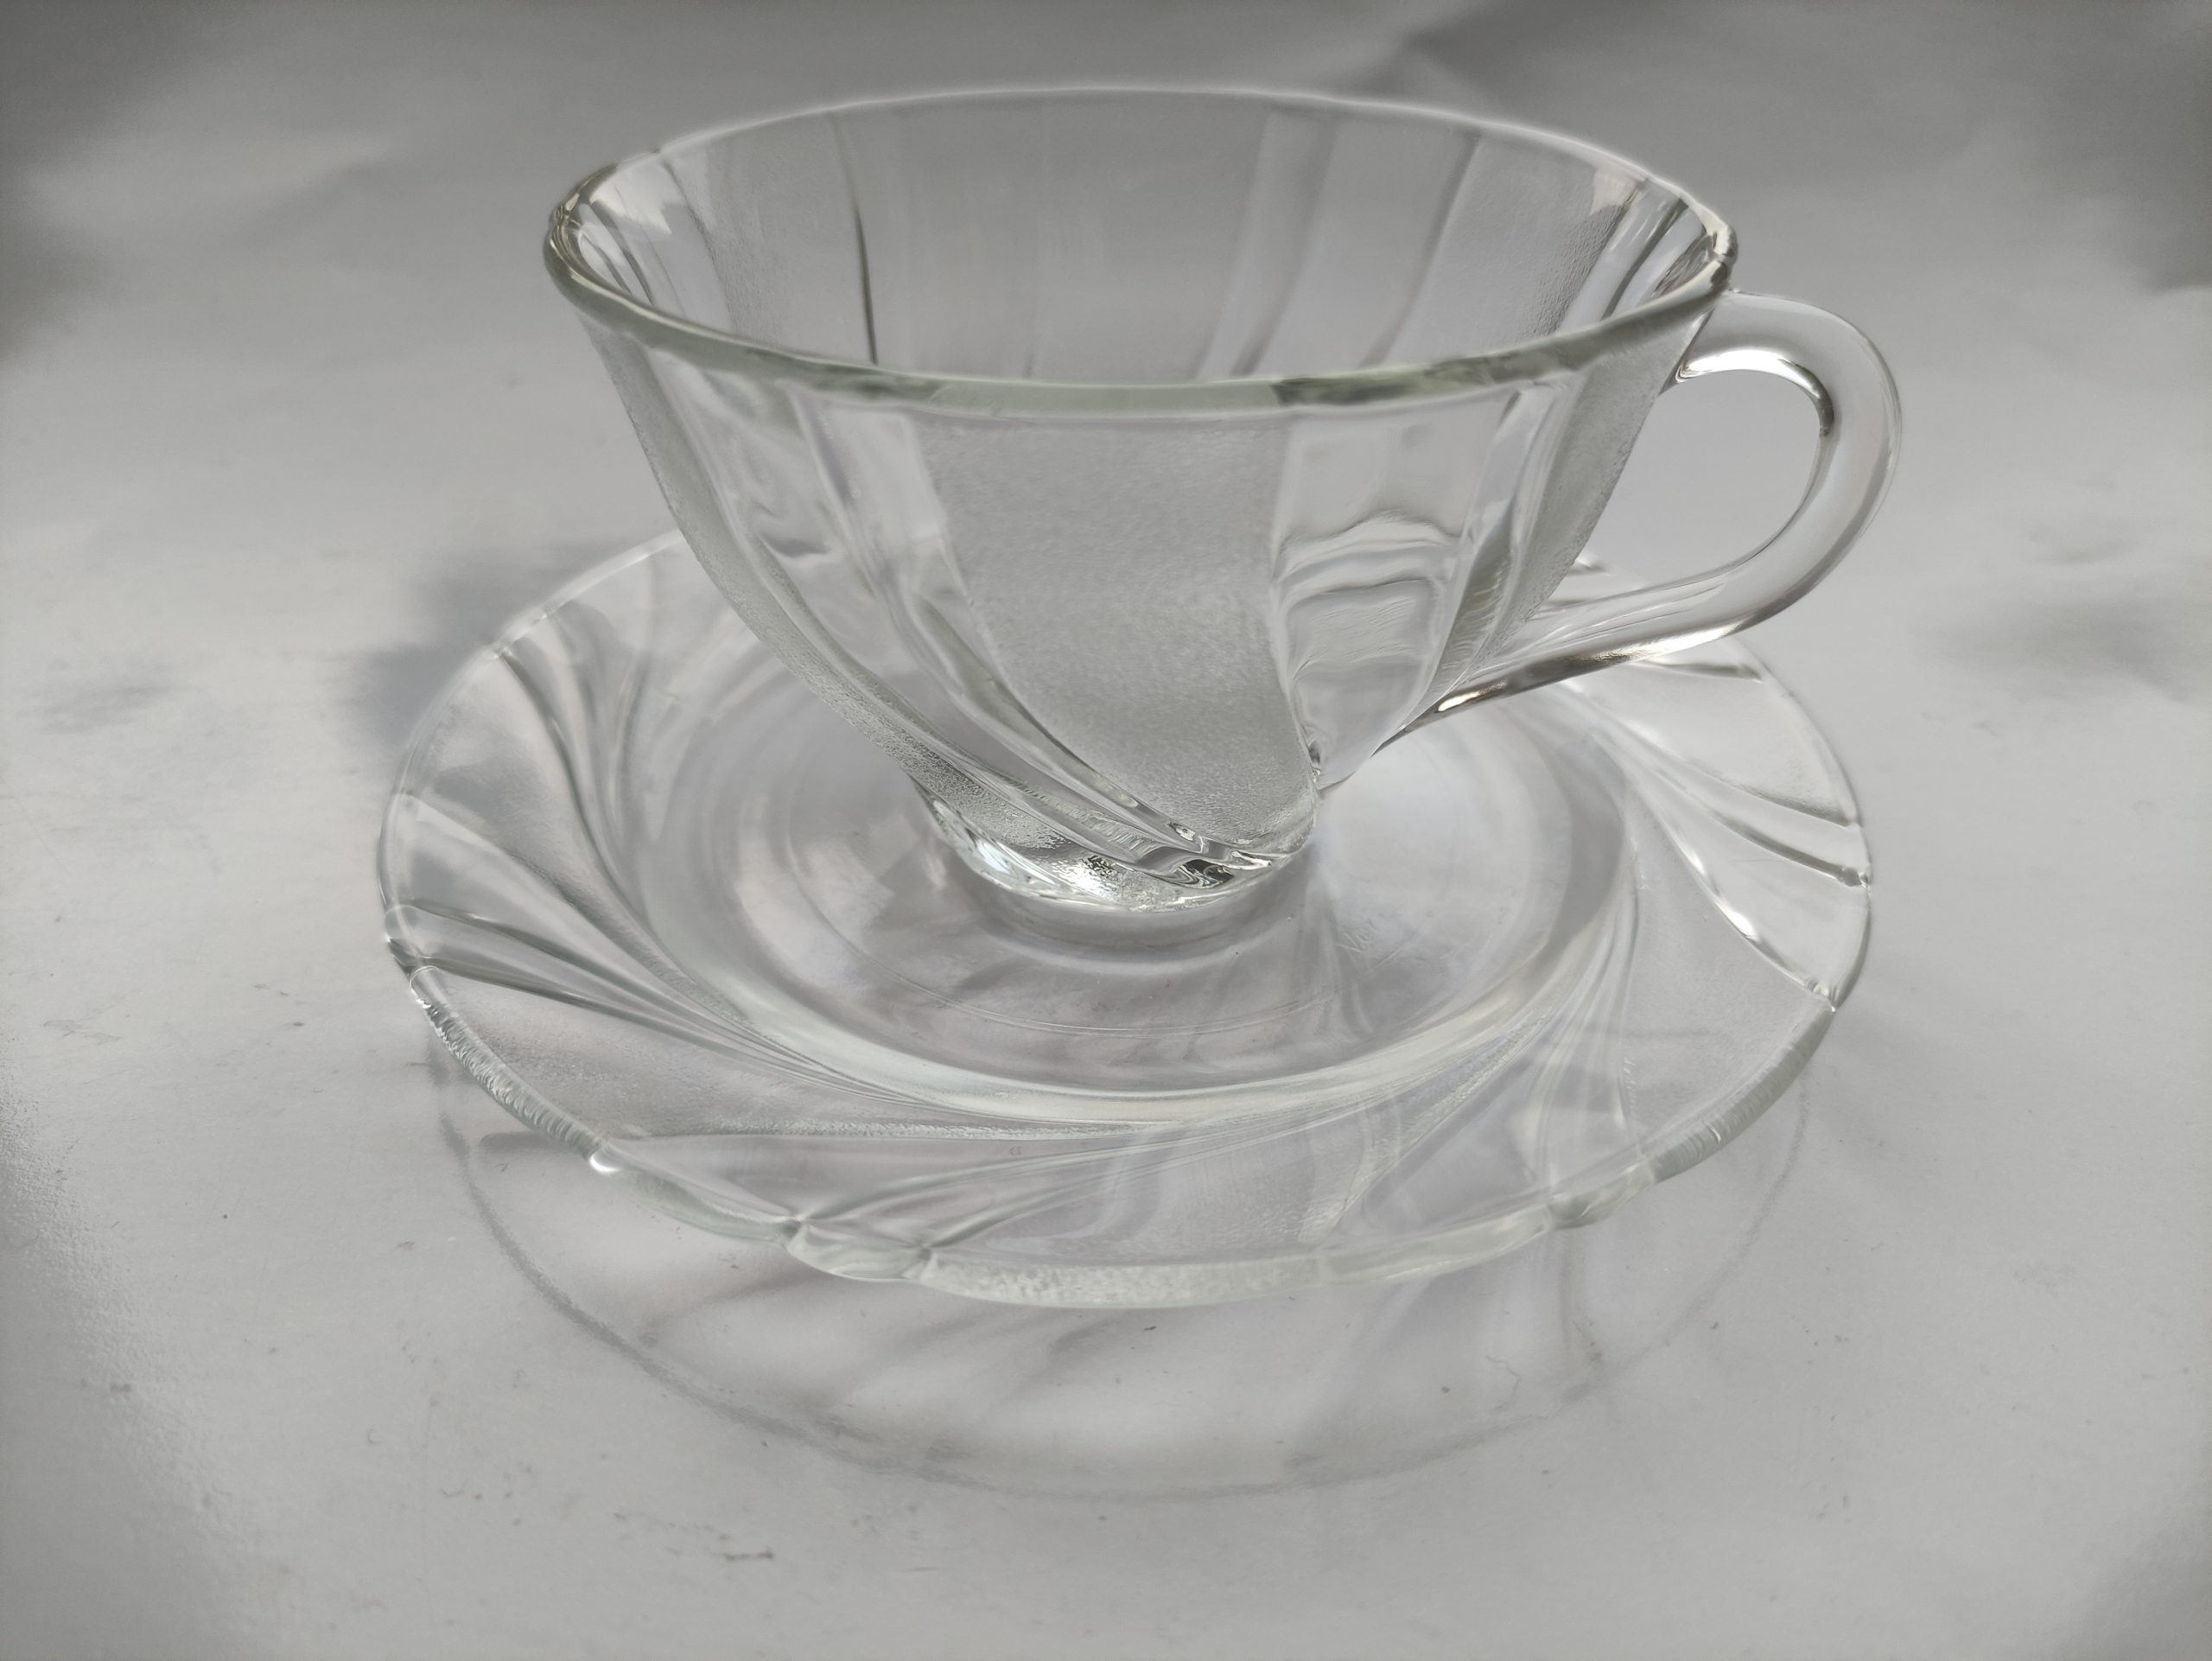 Vereco France. Thee glas en schotel. Transparant glas. Per stuk. 🌺 Vintage Webshop